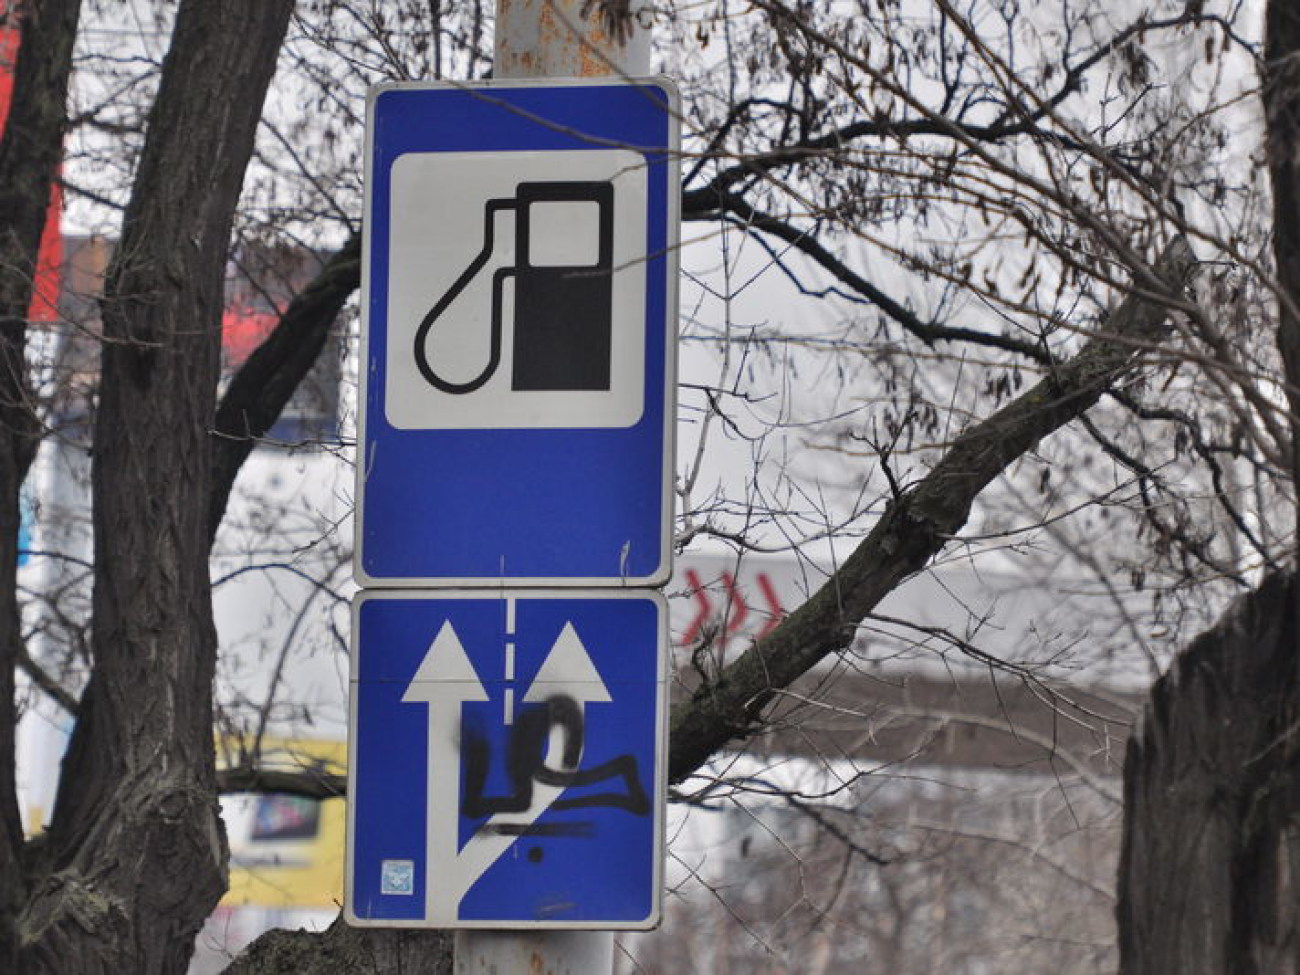 Бензин в Киеве чуть подешевел